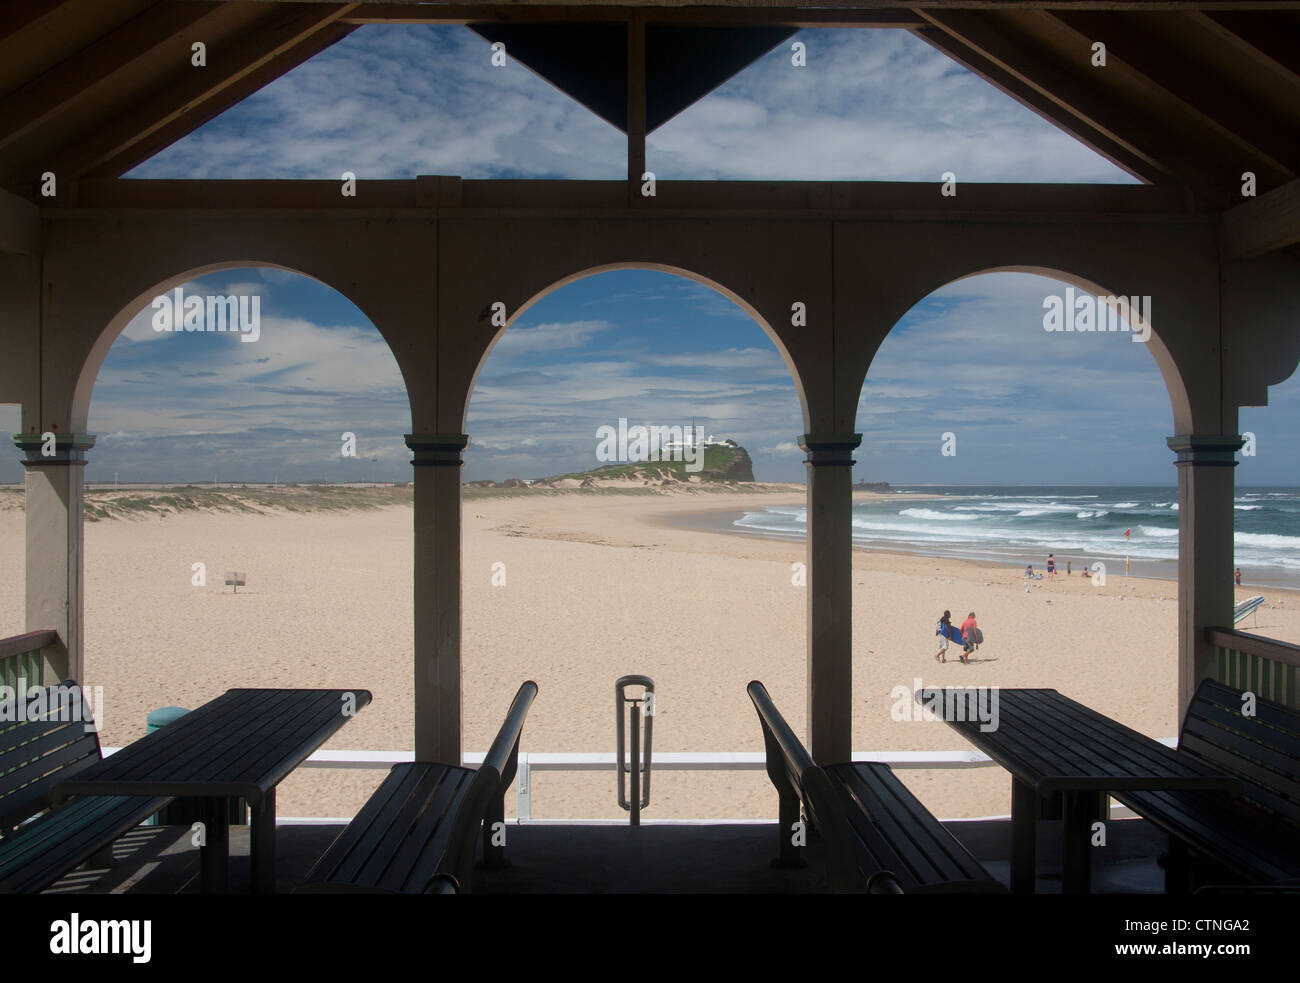 Plage de Nobbys et pointe vu à travers arcades de café avec deux surfeurs à pied de Newcastle mer Nouvelle Galles du Sud (NSW) Australie Banque D'Images